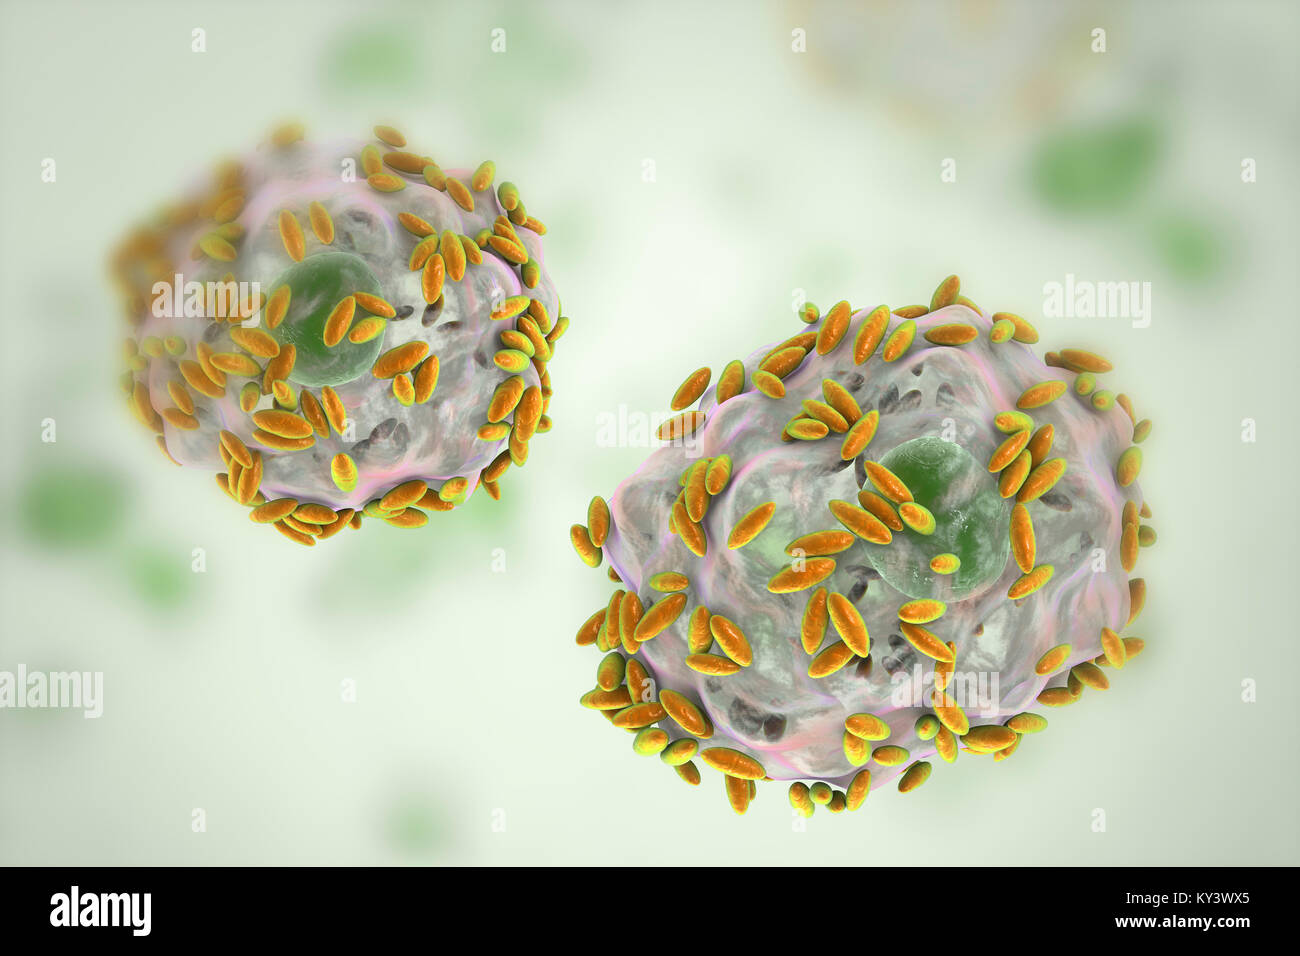 La vaginosi batterica. Computer illustrazione di Gardnerella vaginalis  batteri (aste) attaccato alle cellule epiteliali, noto come indizio di  cellule. G. vaginalis è una delle specie di batteri che causano la  vaginosi. Indizio